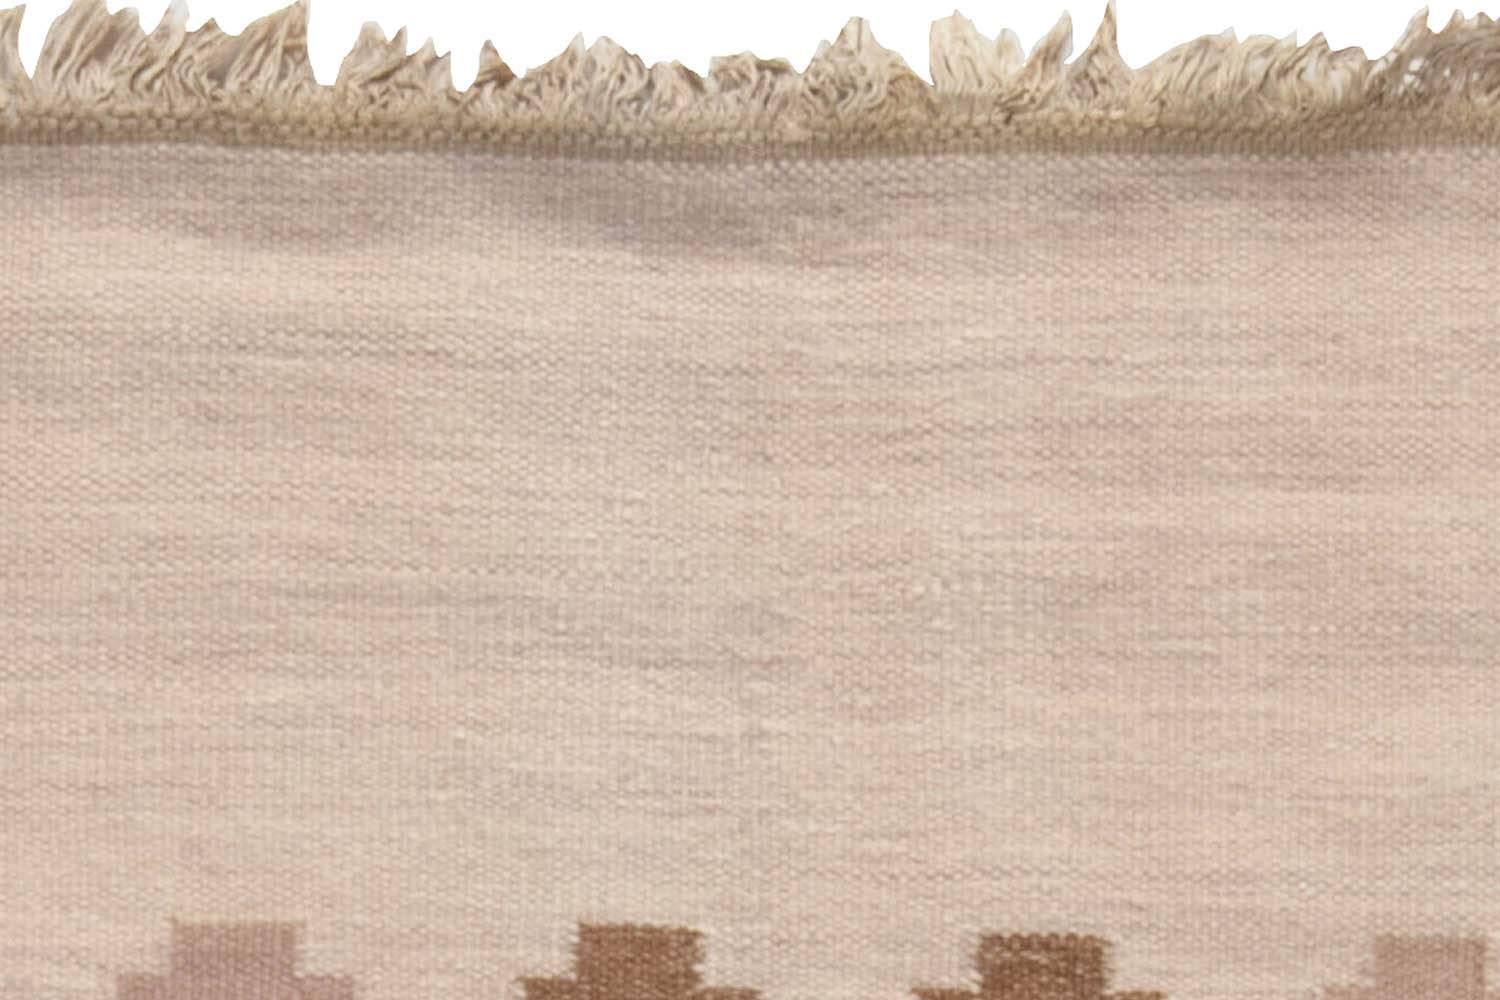 20th Century Mid-20th century Swedish Beige, Pink, Brown, Gray Wool Rug by Doris Leslie Blau